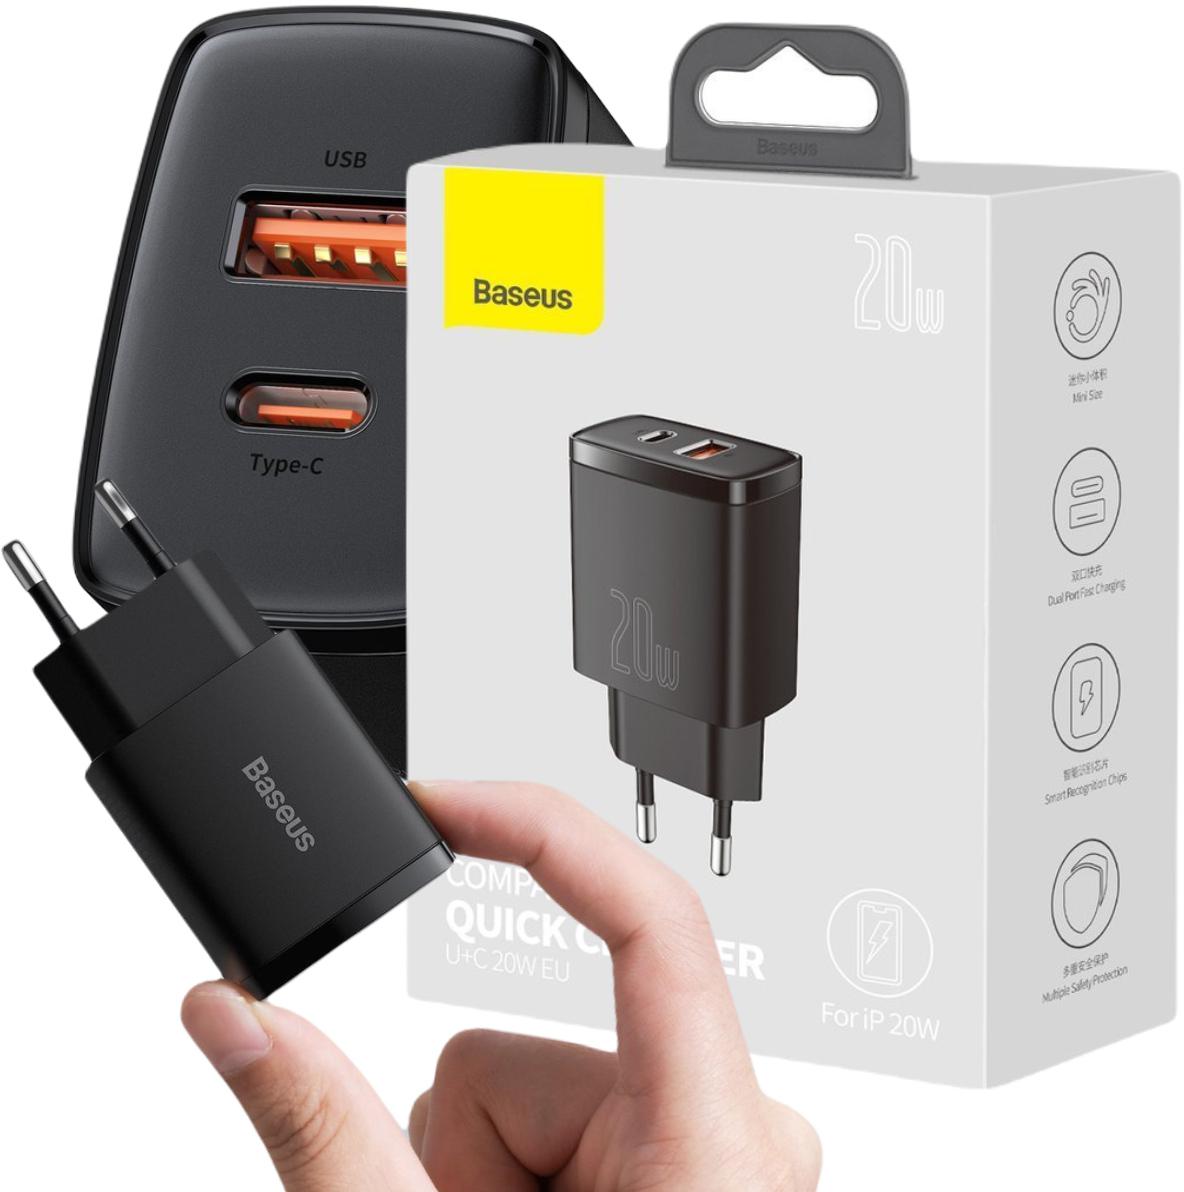 Szybka ładowarka sieciowa Baseus Compact USB / USB Typ C 20 W 3 A Power Delivery Quick Charge 3.0 czarna CCXJ-B01 – najważniejsze cechy: